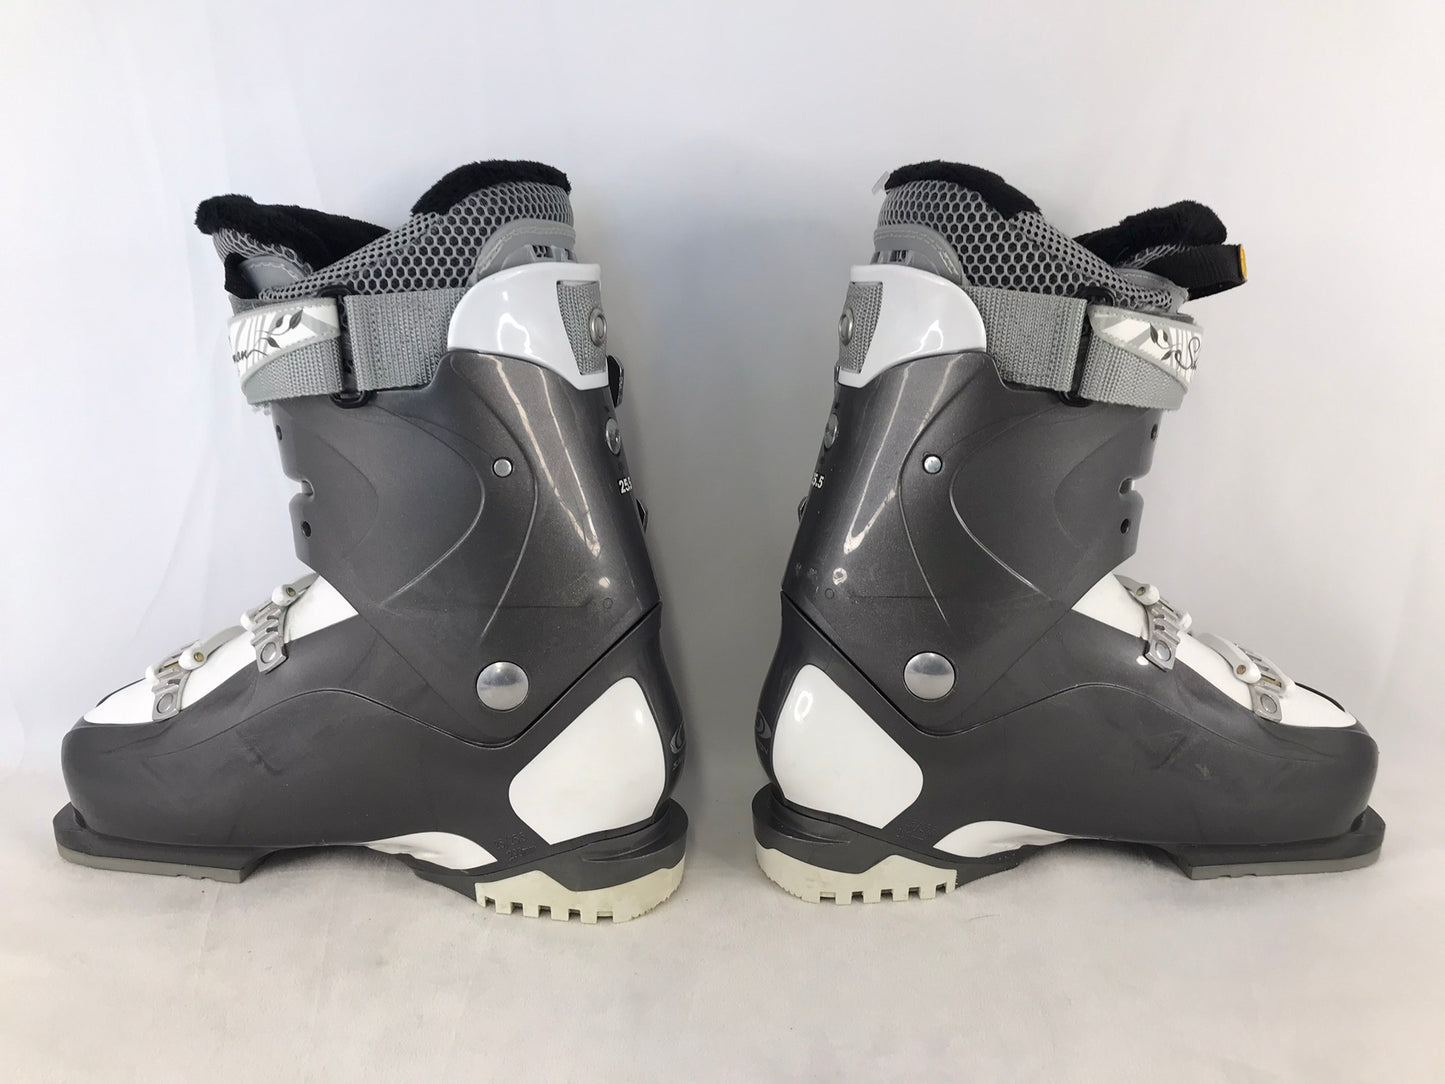 Ski Boots Mondo Size 25.0 Ladies Size 8 298 mm Salomon Energizer Grey White New Demo Model